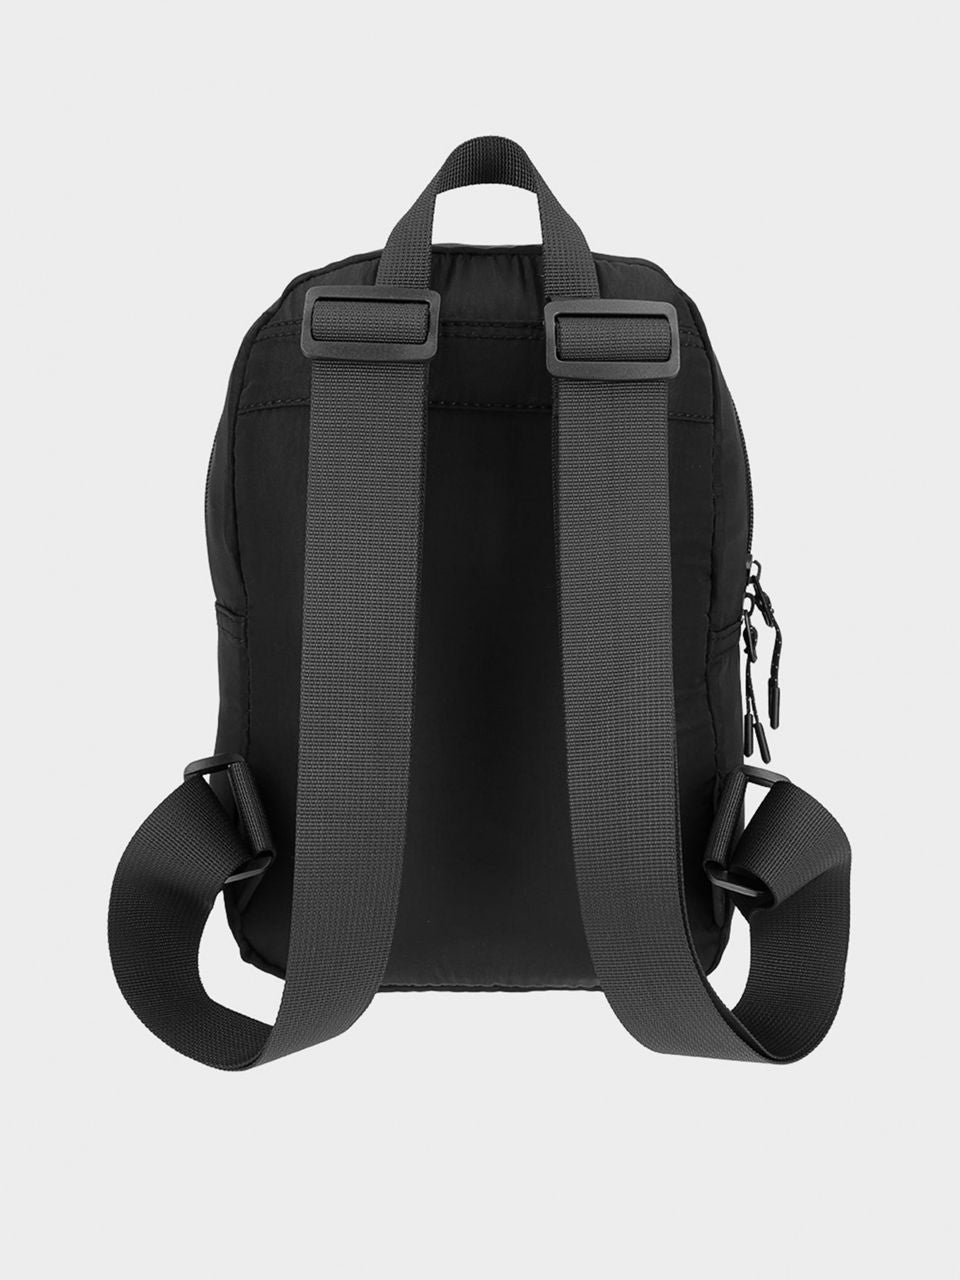 Рюкзак 4F backpack f079 4Fss23abacf079 black